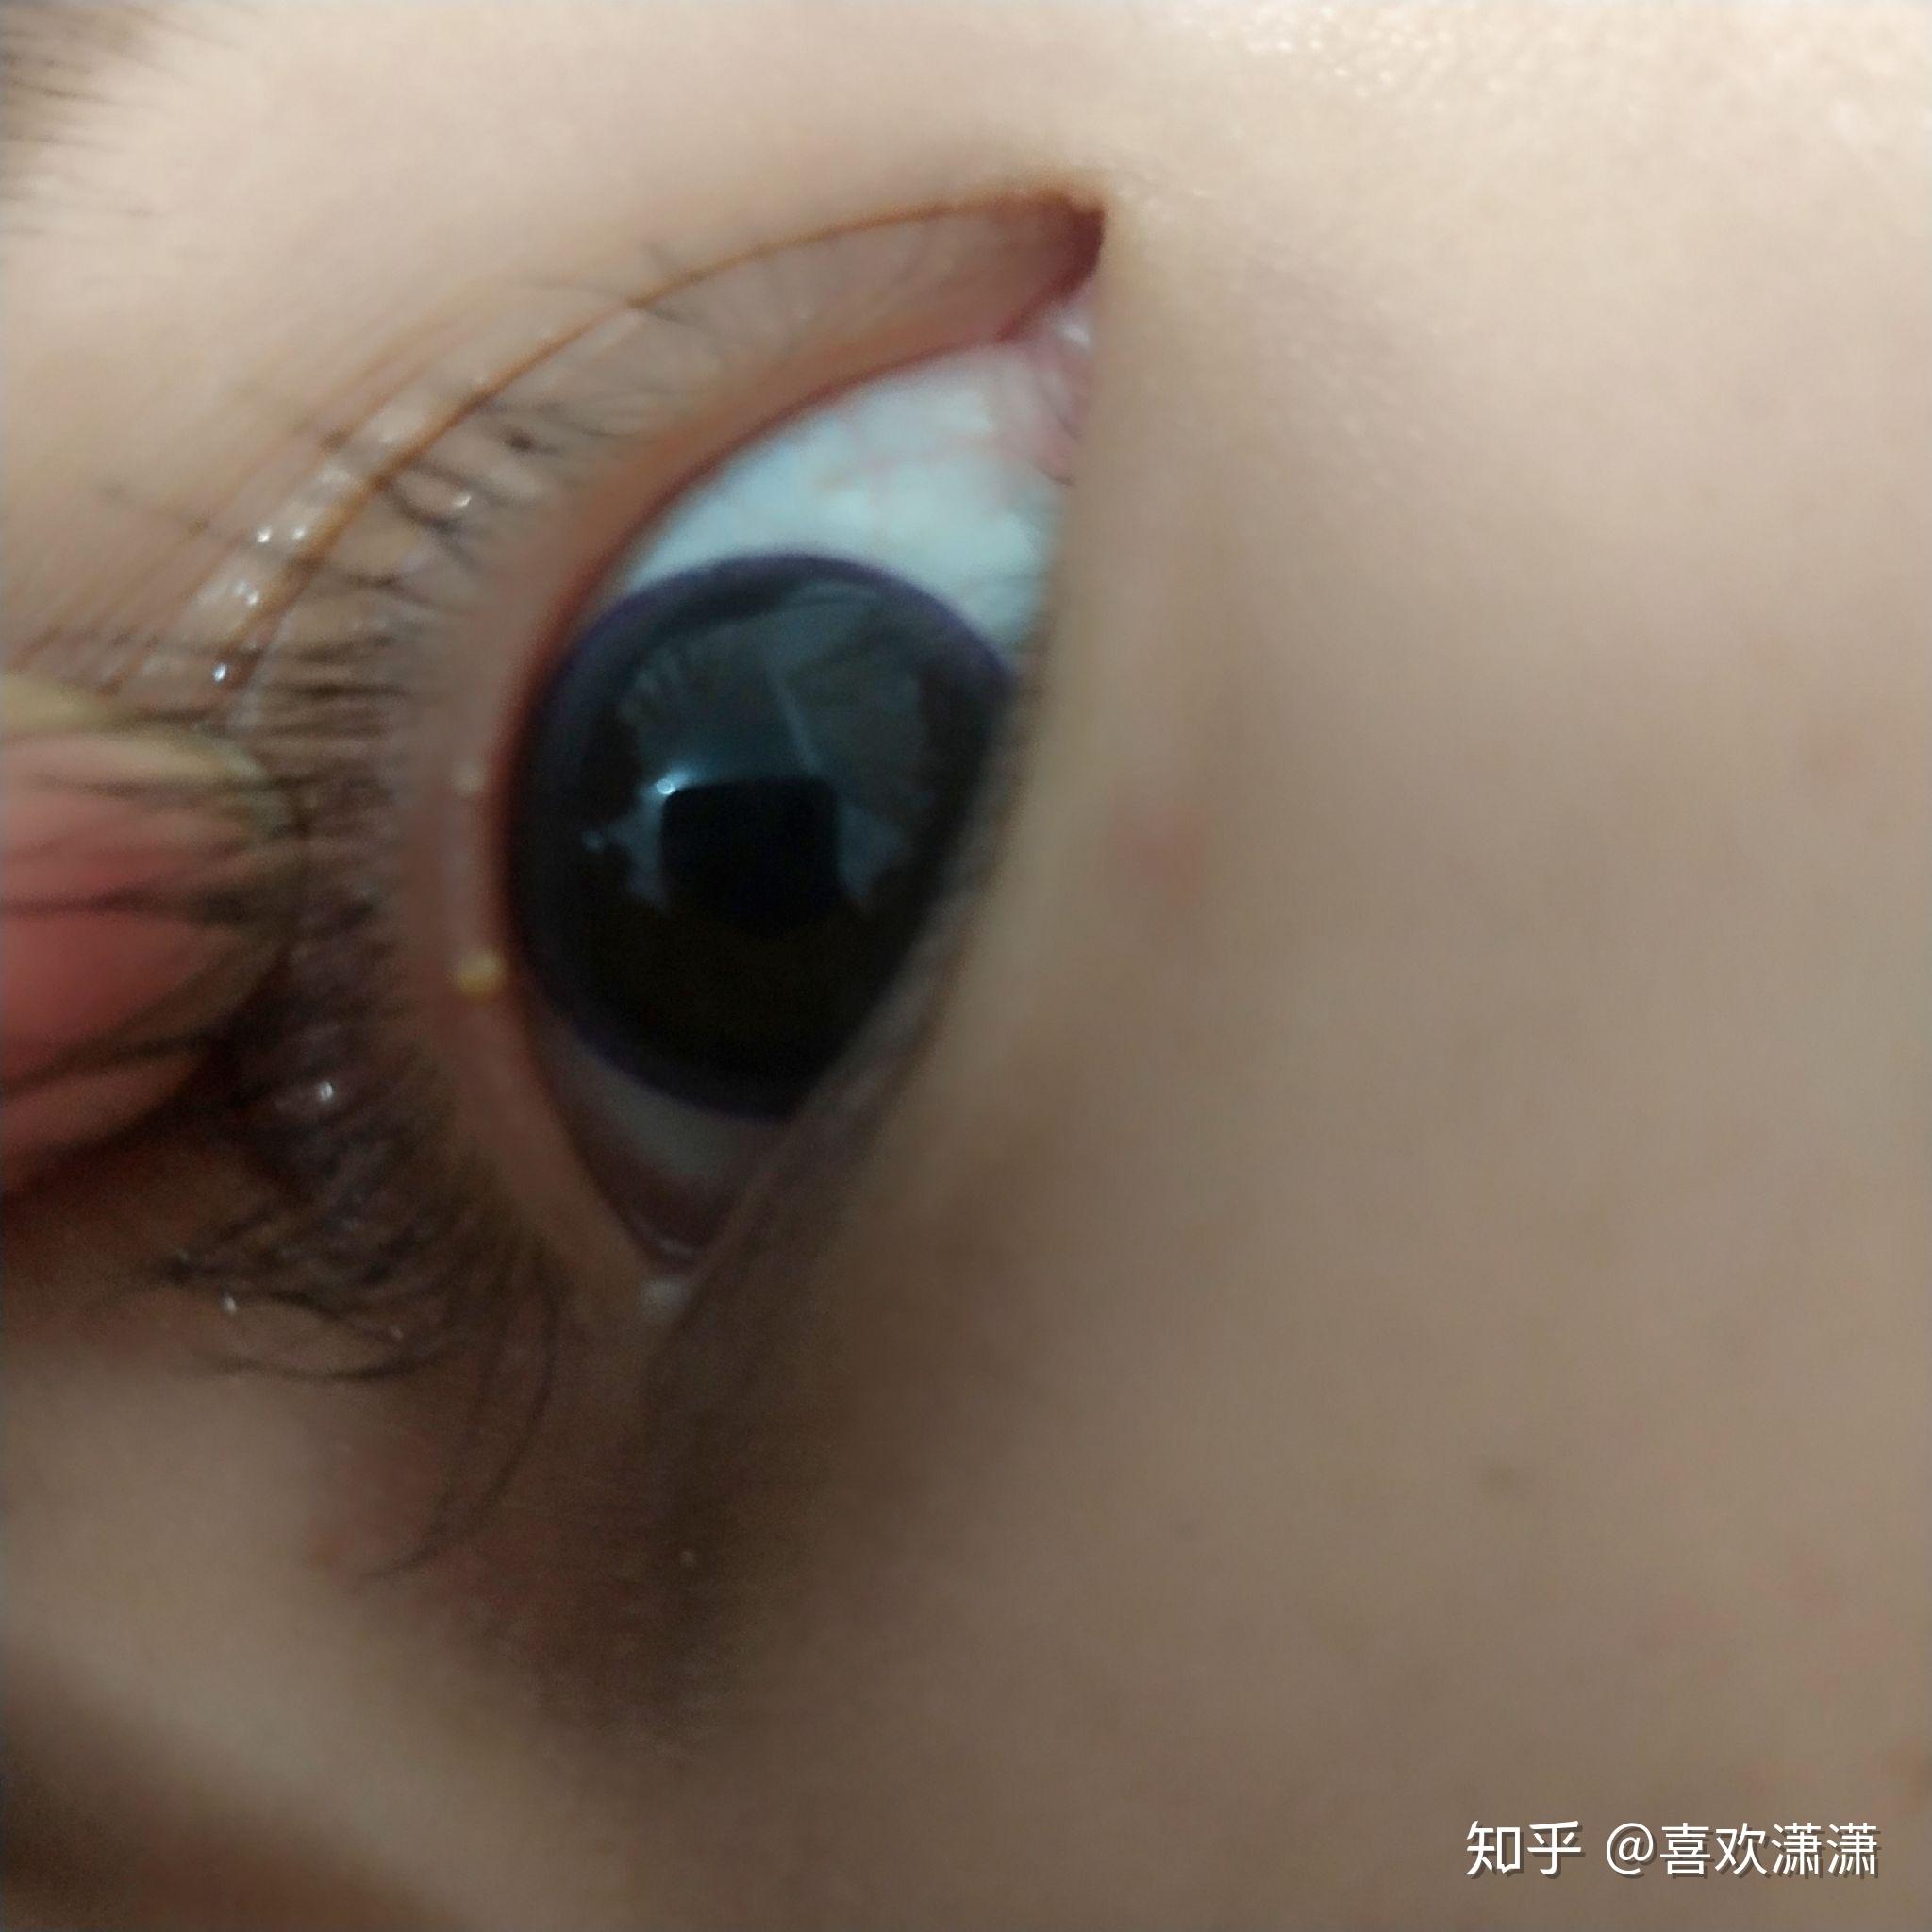 眼皮内的上眼睑长了一个白色颗粒儿点了一个月的日本眼药水也没有用